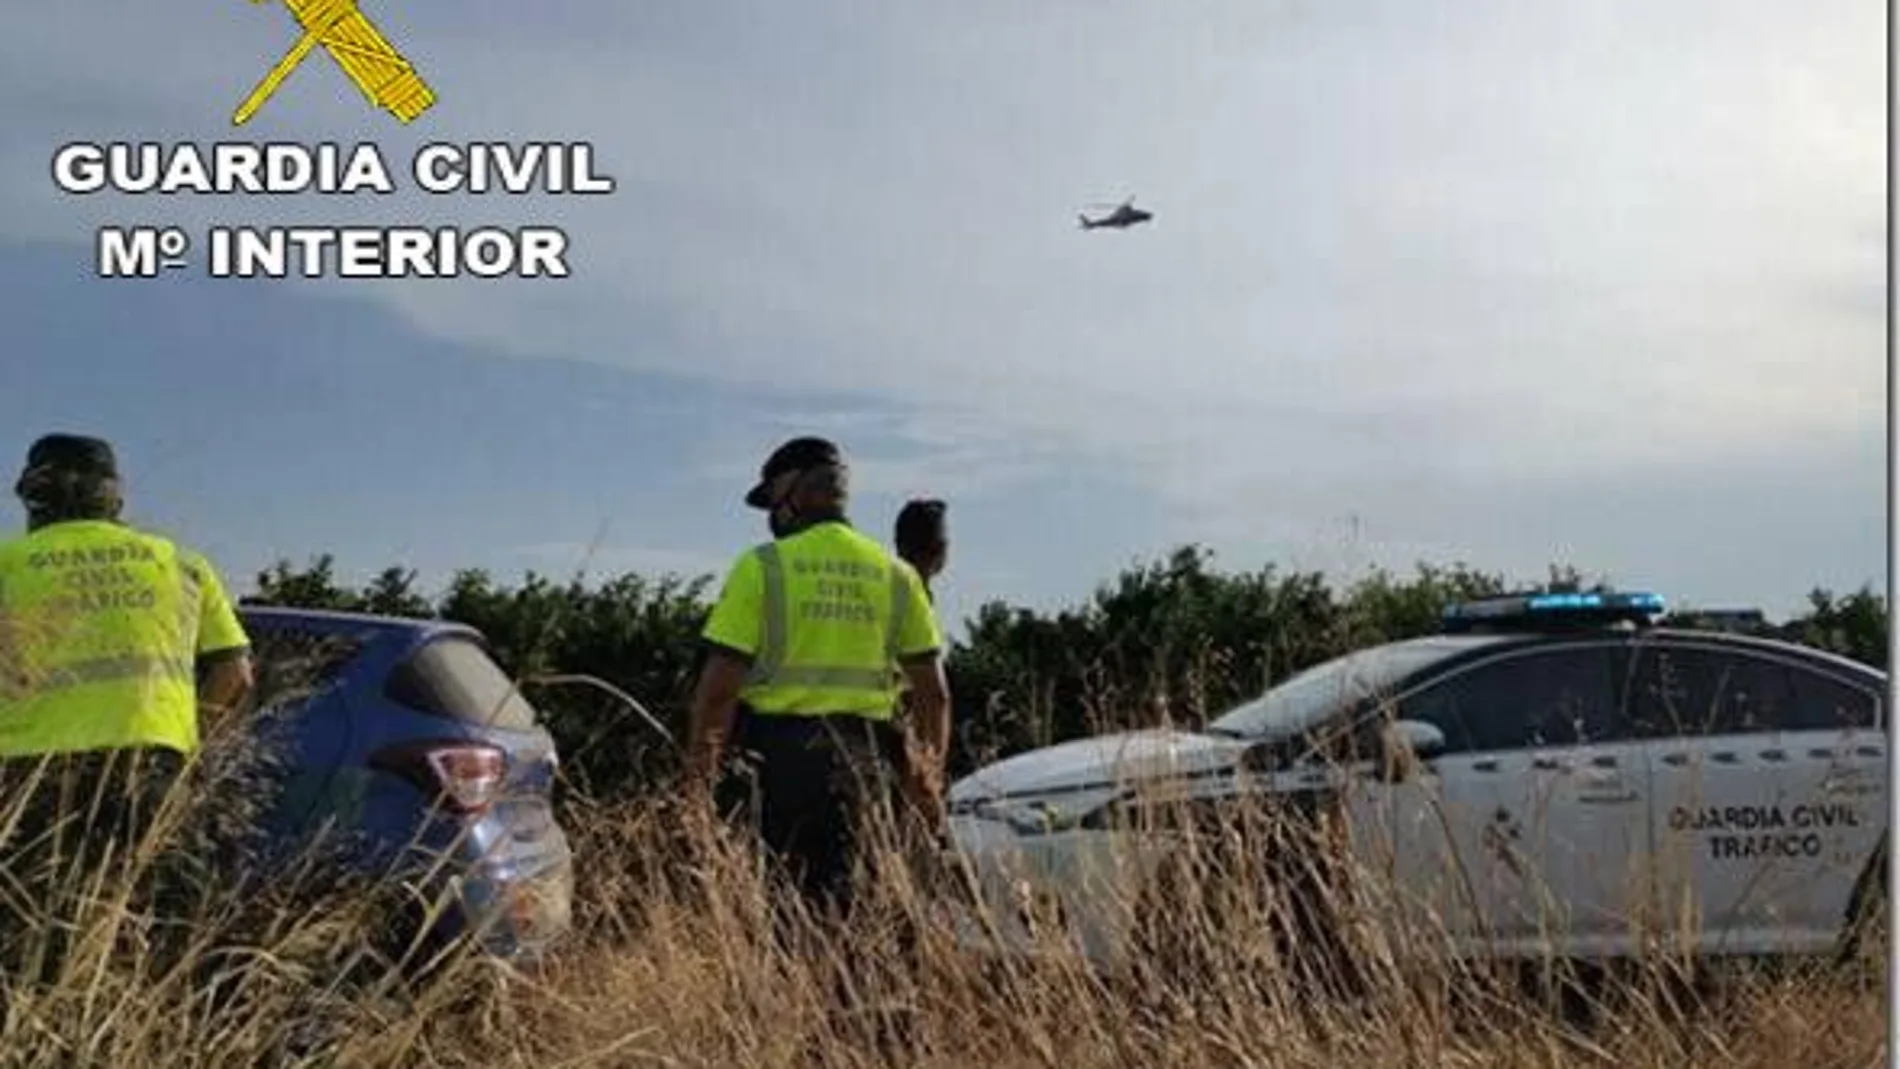 La Guardia Civil encontró al hombre en el interior de su vehículo y desorientado